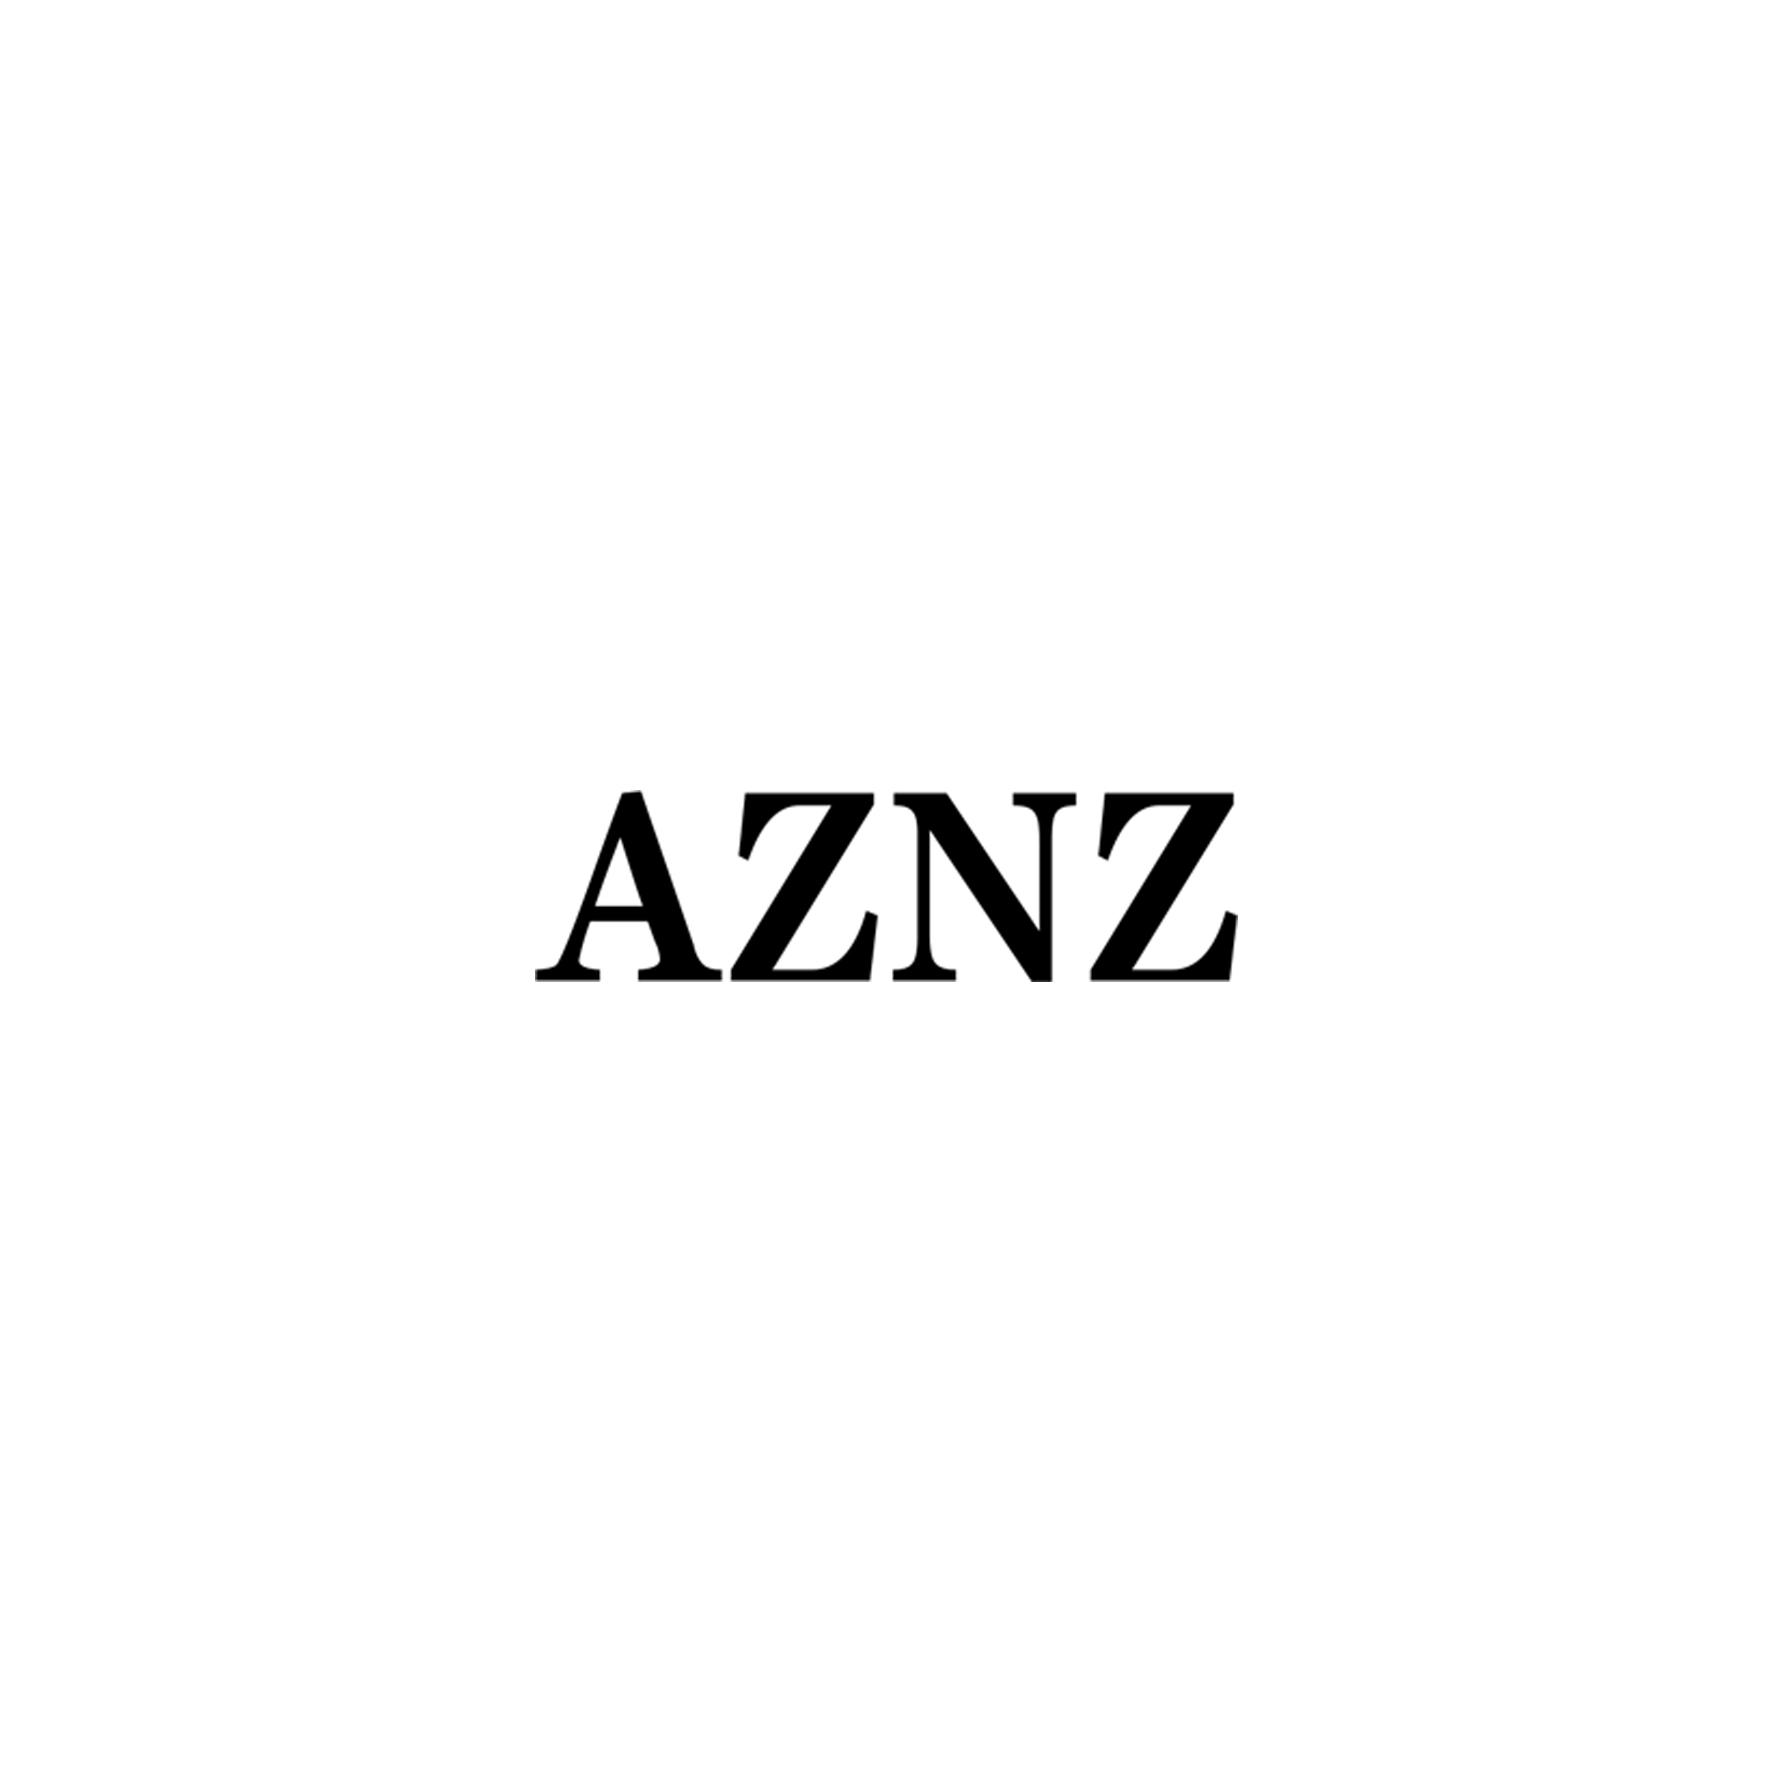 AZNZ